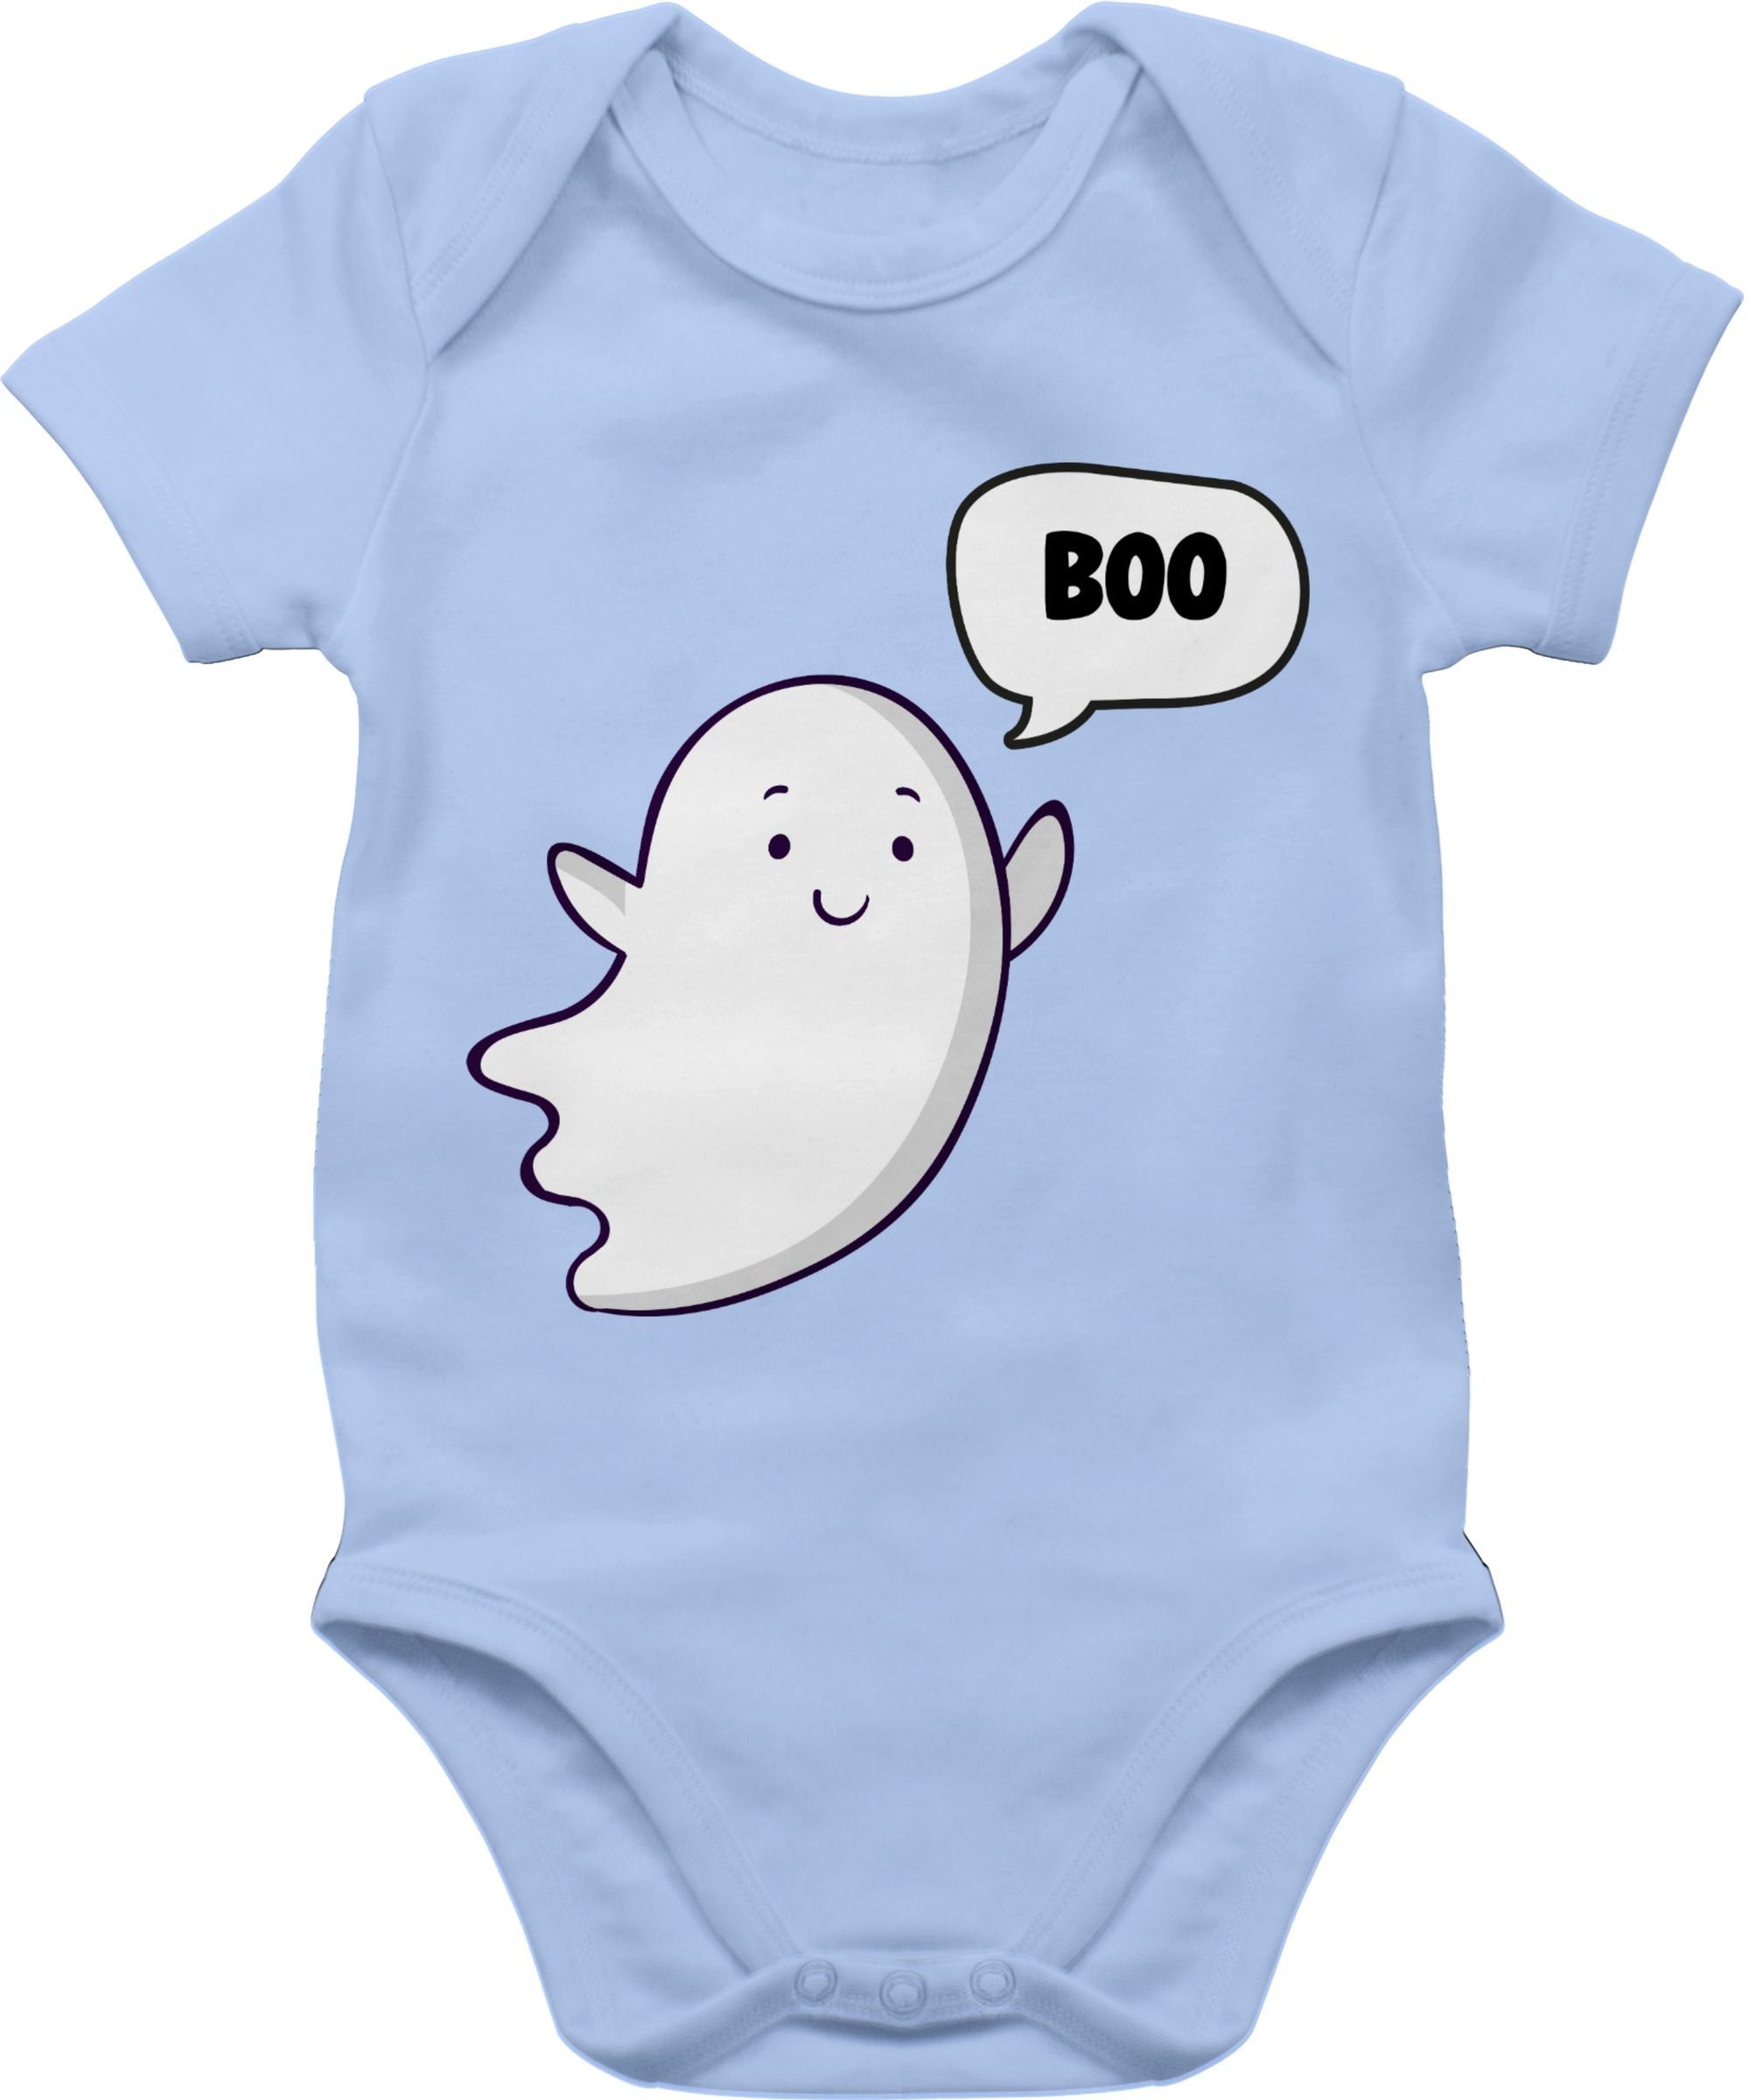 Shirtracer Shirtbody Süßer kleiner Geist Geister Gespenst Ghost Halloween Kostüme für Baby 3 Babyblau